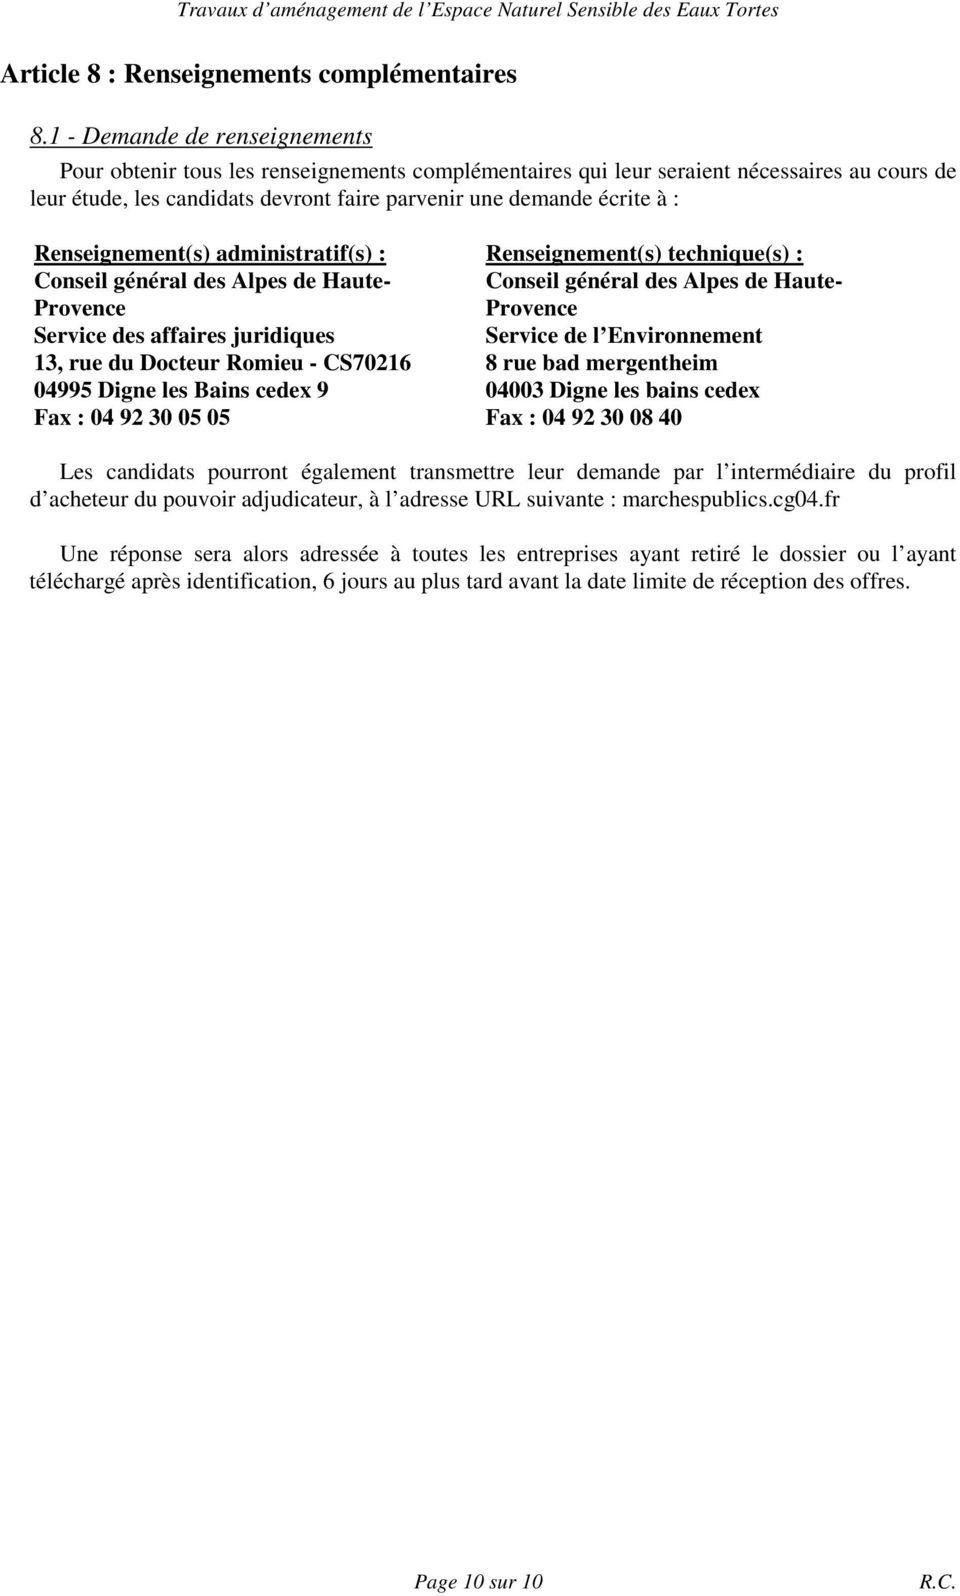 Renseignement(s) administratif(s) : Conseil général des Alpes de Haute- Provence Service des affaires juridiques 13, rue du Docteur Romieu - CS70216 04995 Digne les Bains cedex 9 Fax : 04 92 30 05 05